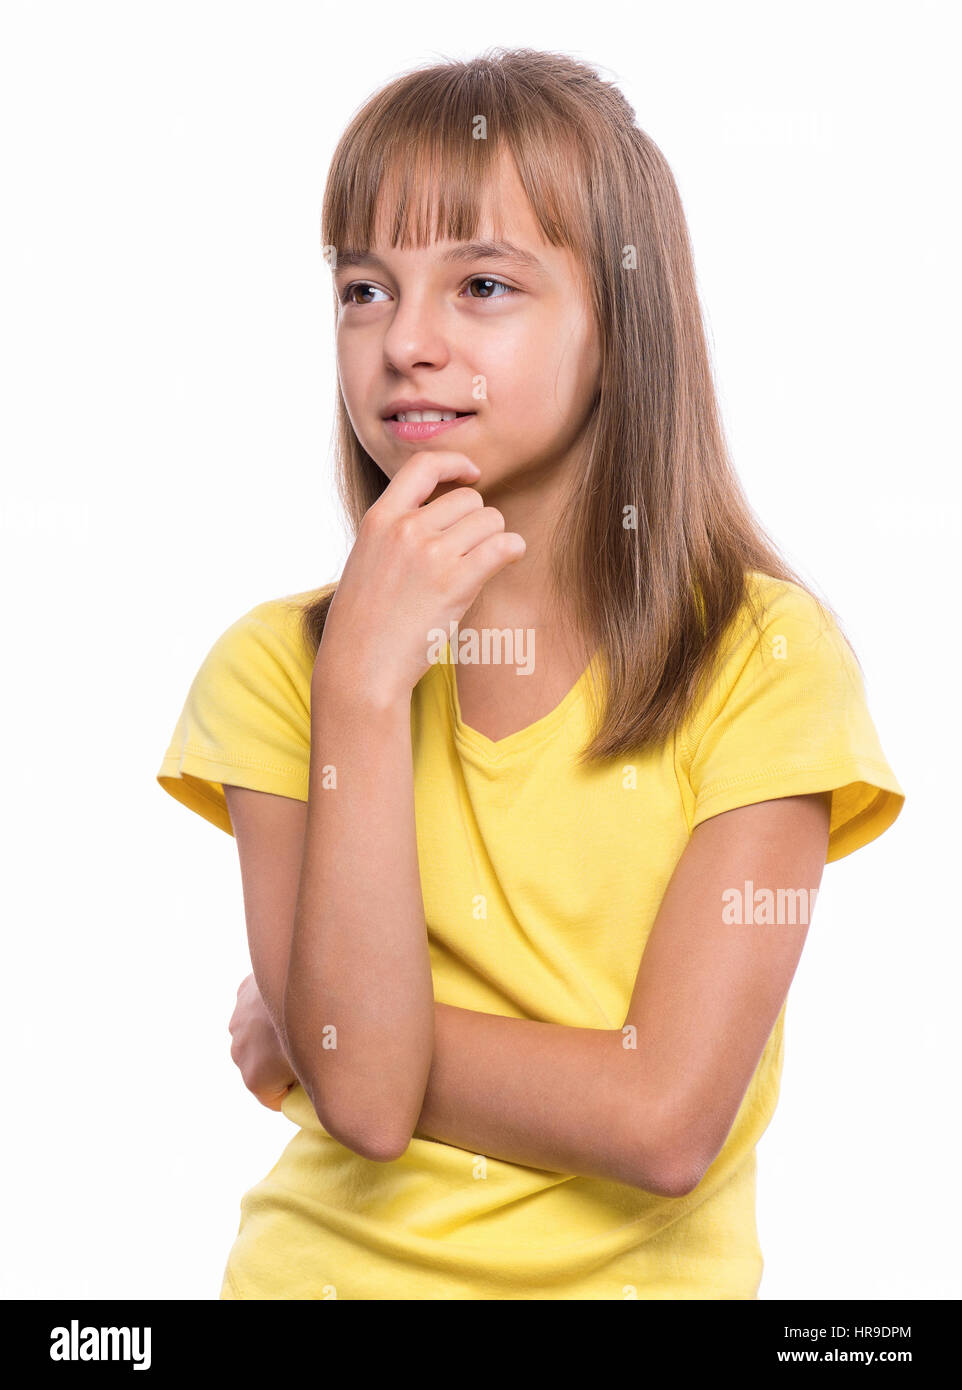 Emotionale Brustbild des Kaukasischen Mädchen mit gelben T-shirt, wird sie lachen und sah sehr glücklich. Glücklich Schulmädchen wegsehen. Lustig Stockfoto